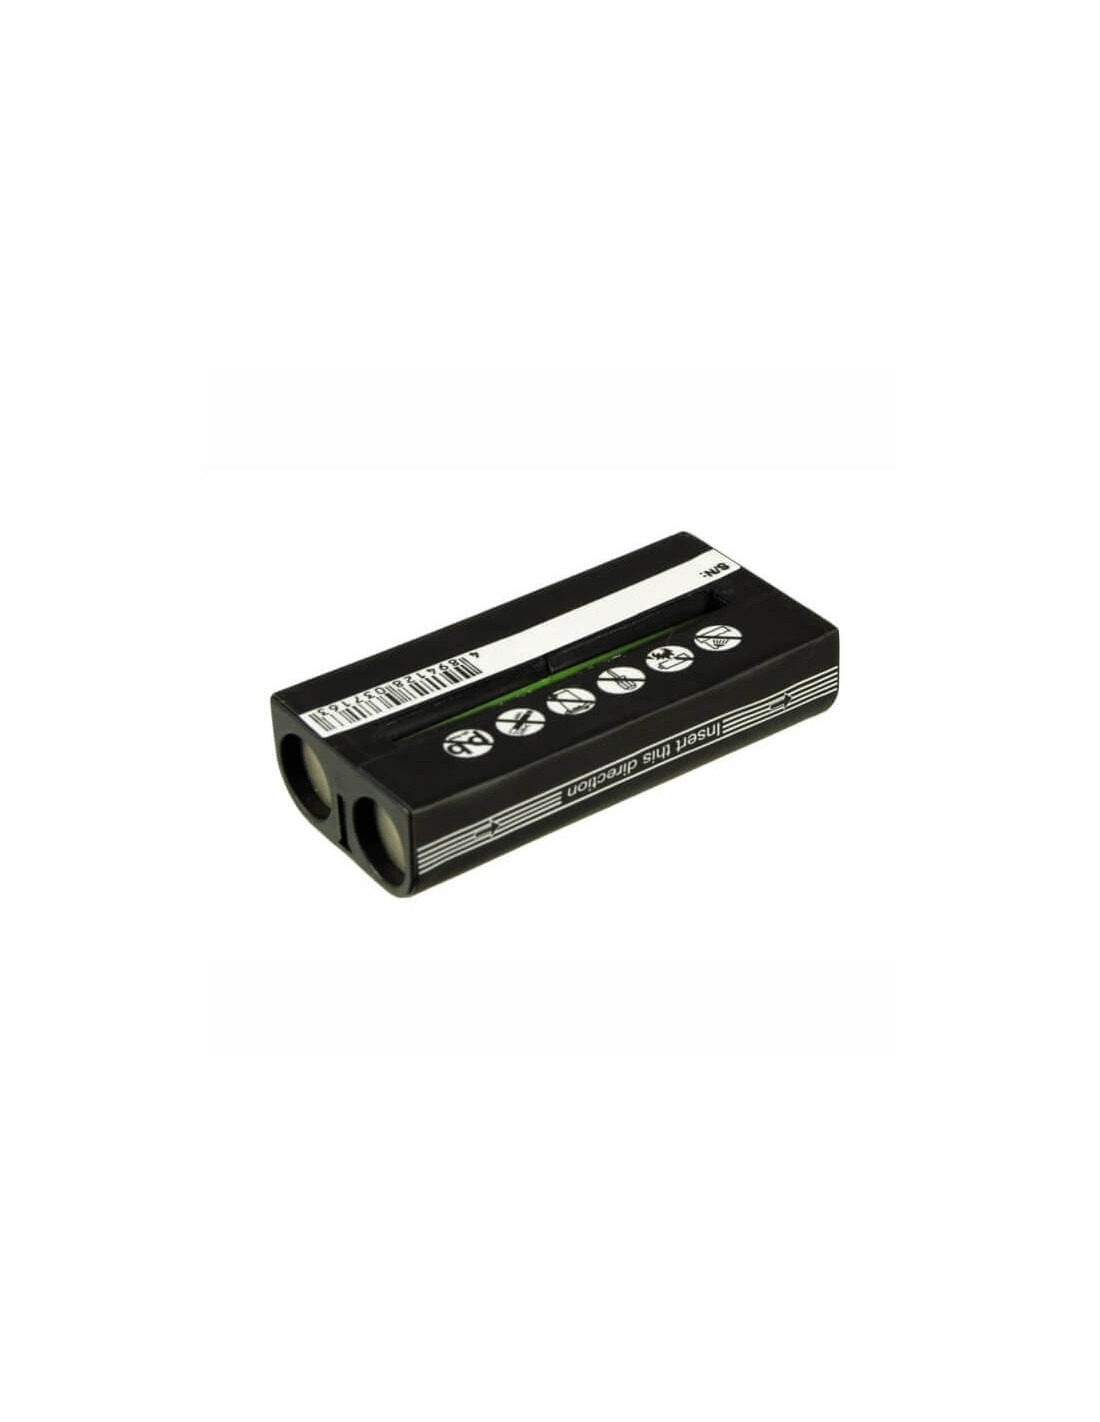 Battery for Sony Mdr-rf860, Mdr-rf4000, Mdr-rf970 2.4V, 700mAh - 1.68Wh